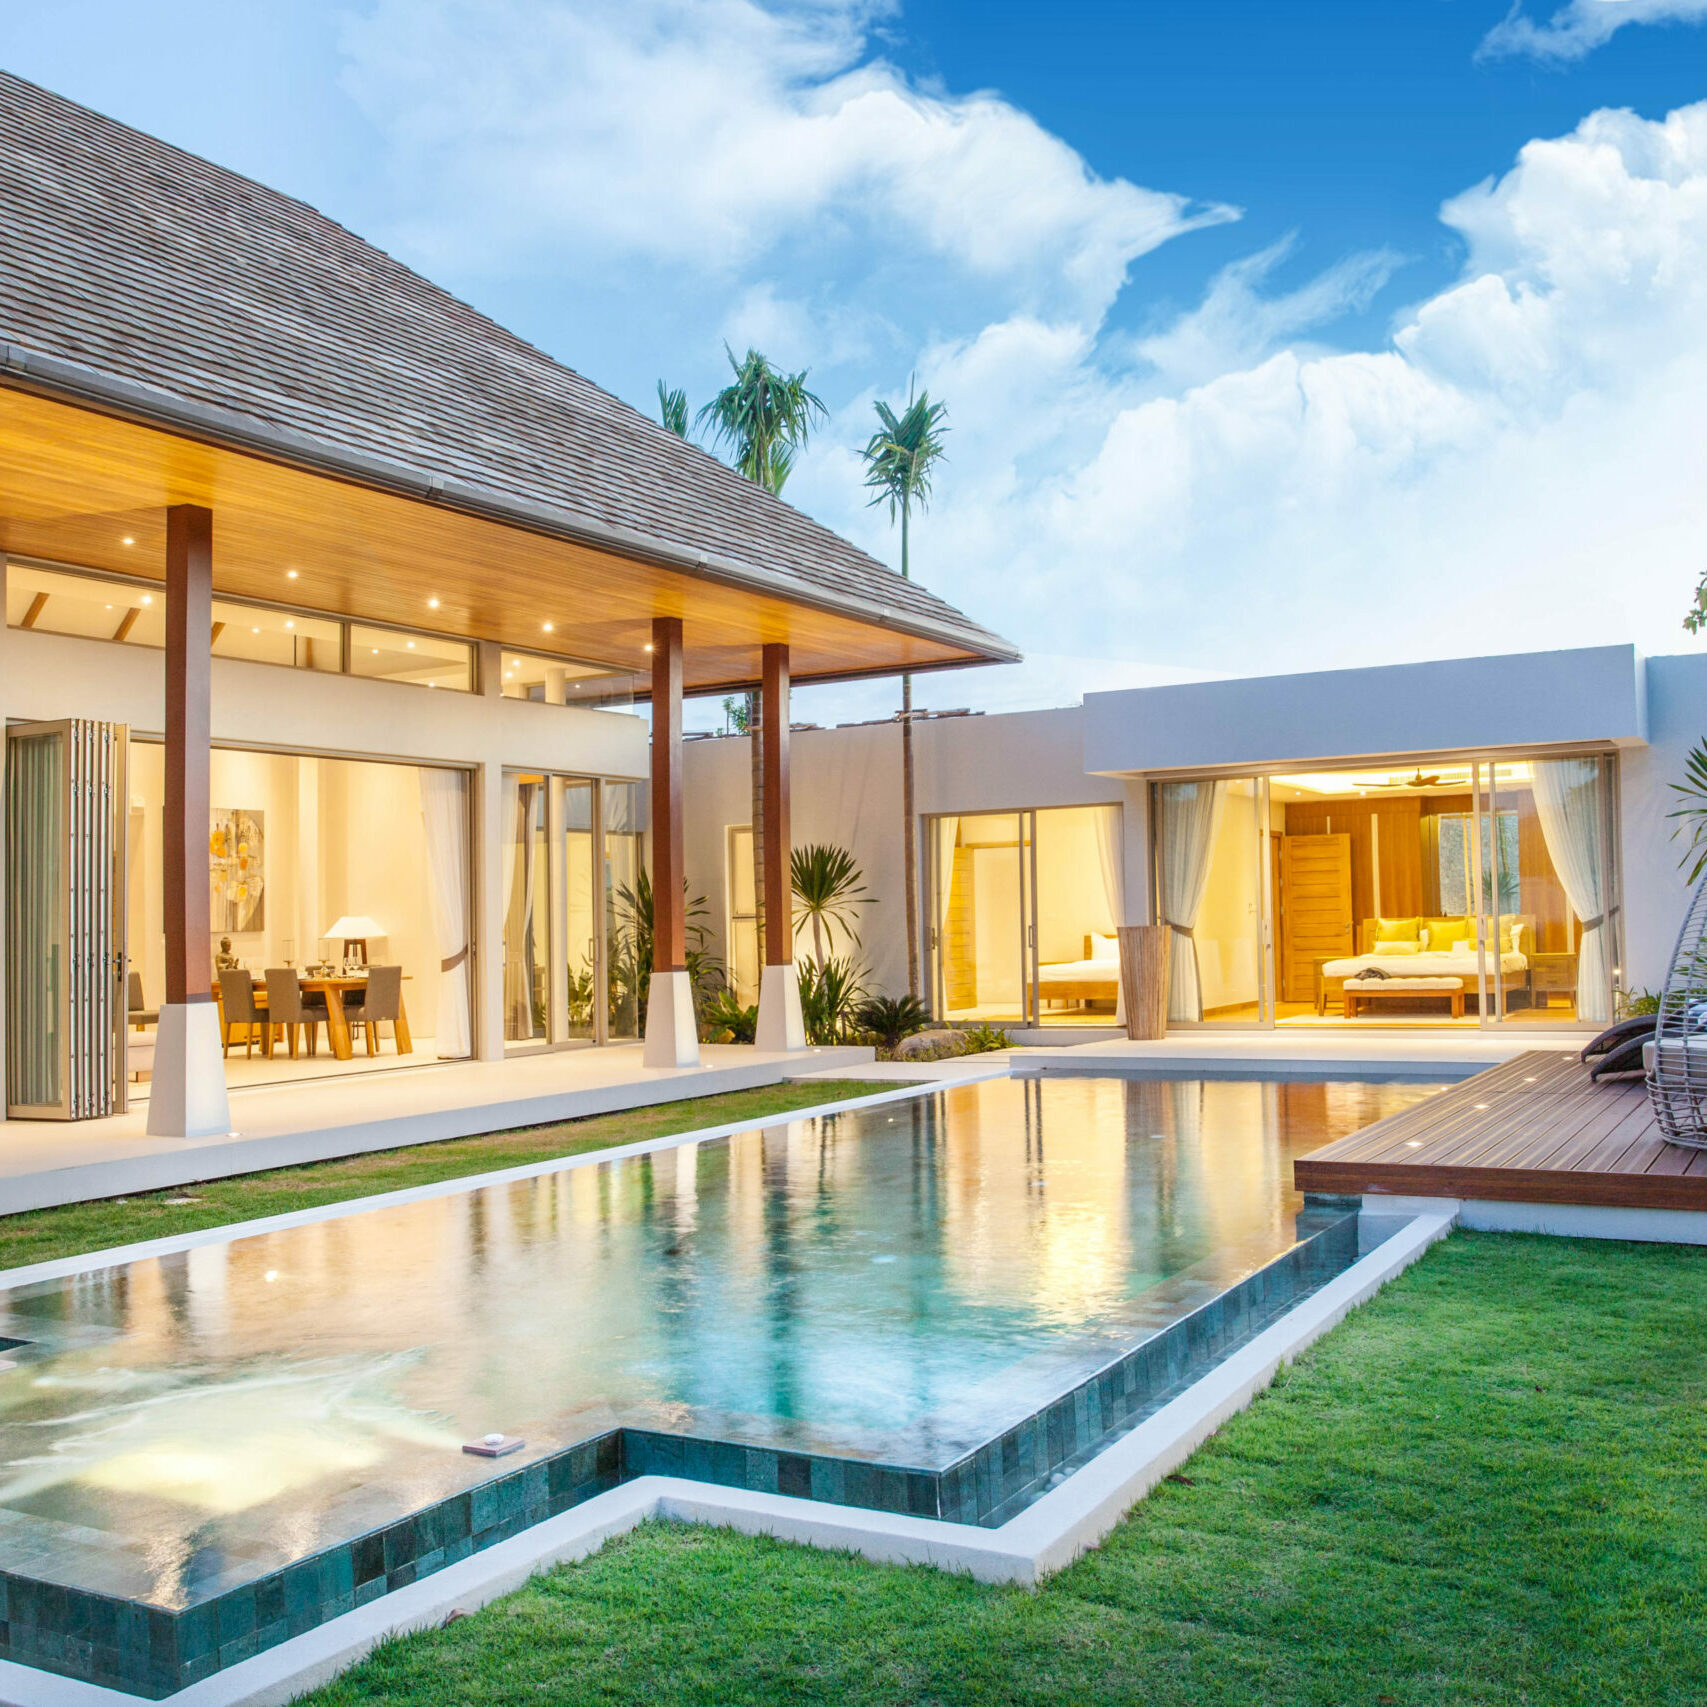 Real,Estate,Luxury,Exterior,Design,Pool,Villa,With,Interior,Design